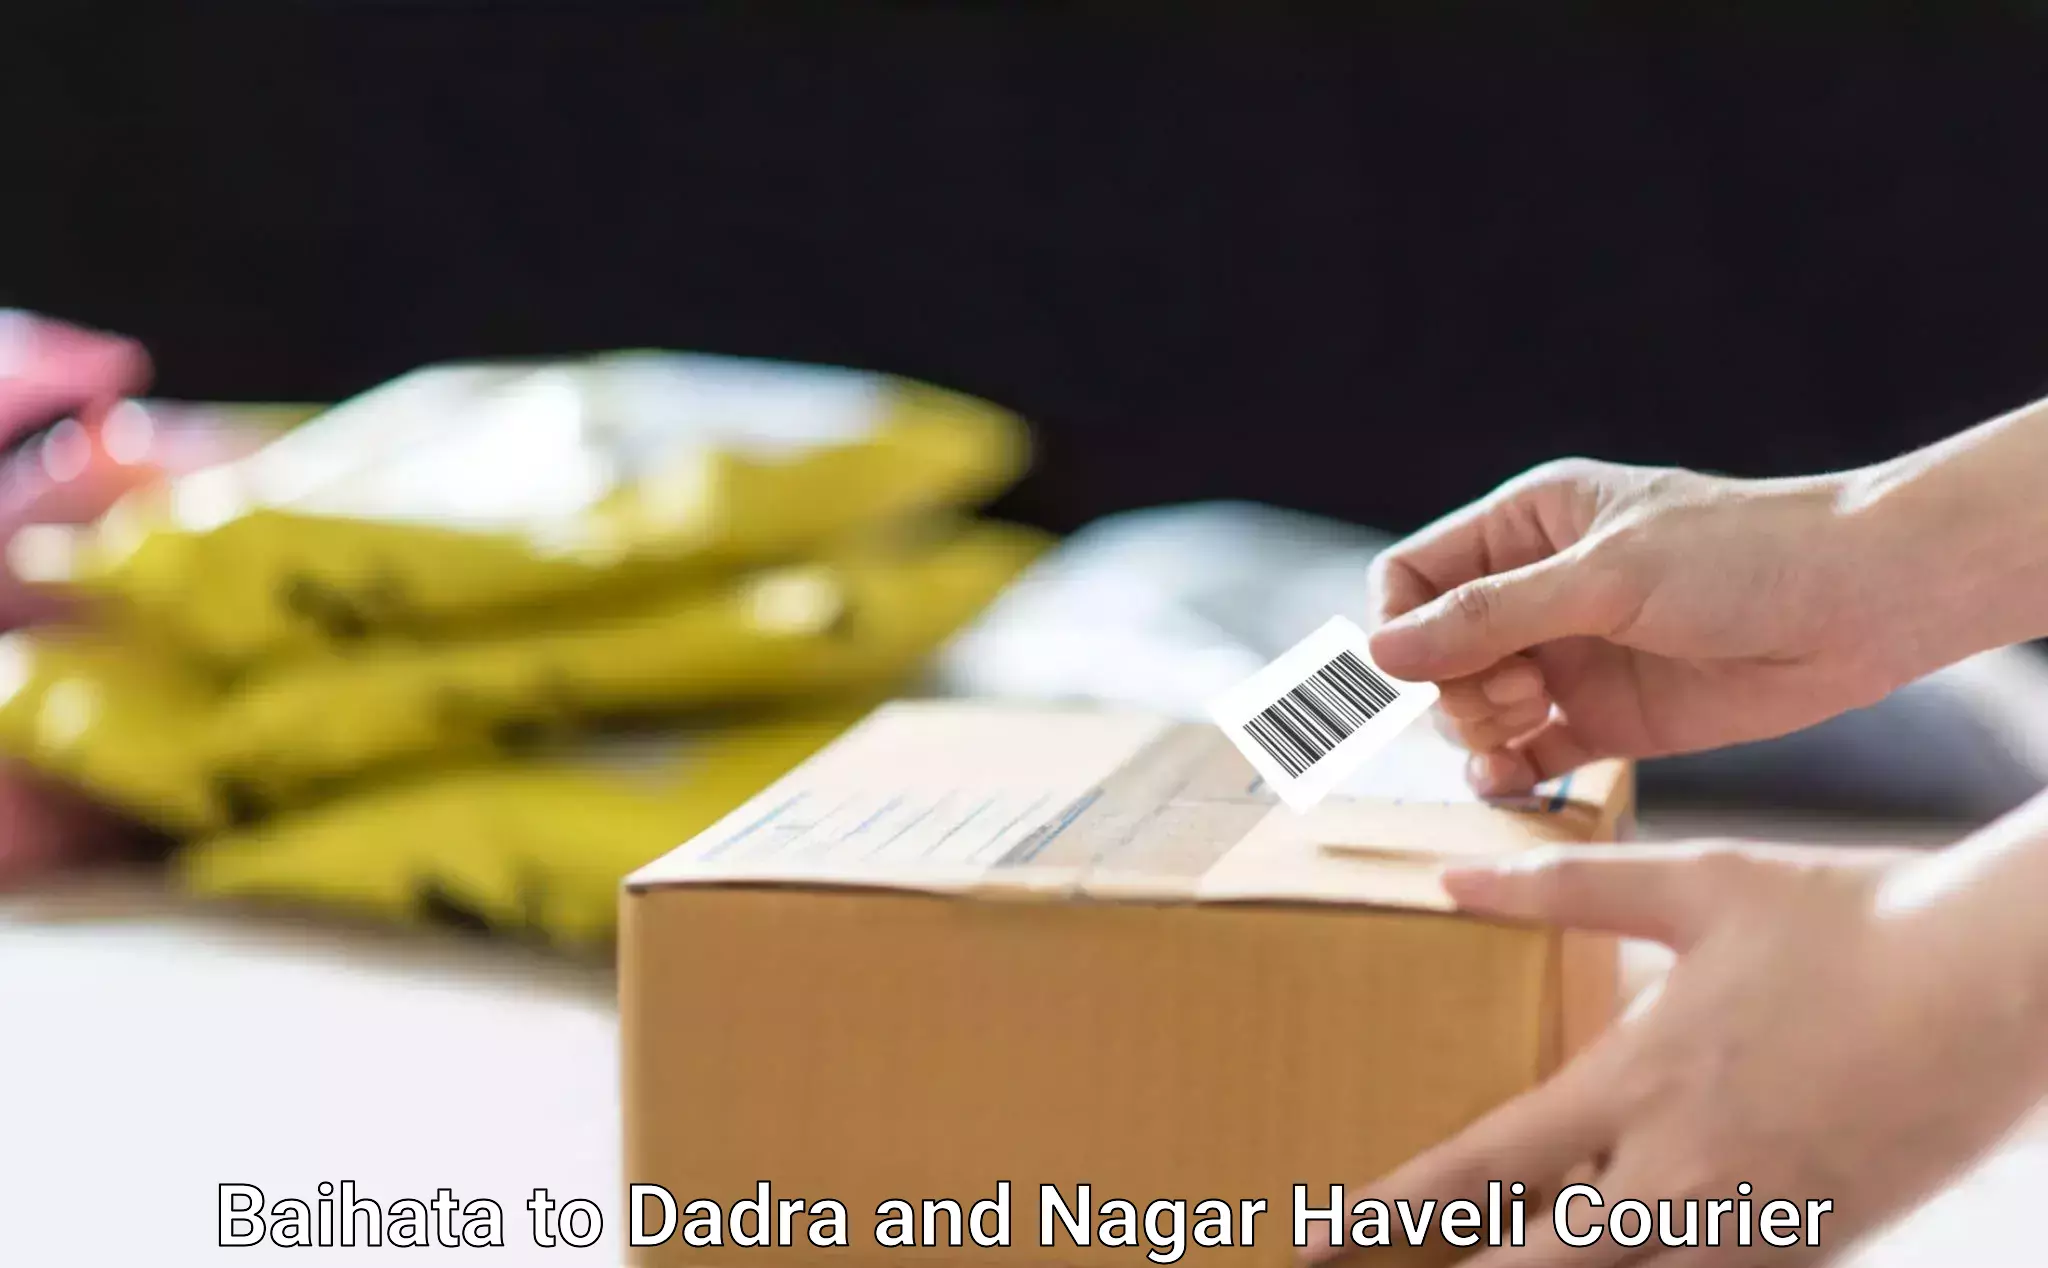 Domestic courier Baihata to Dadra and Nagar Haveli